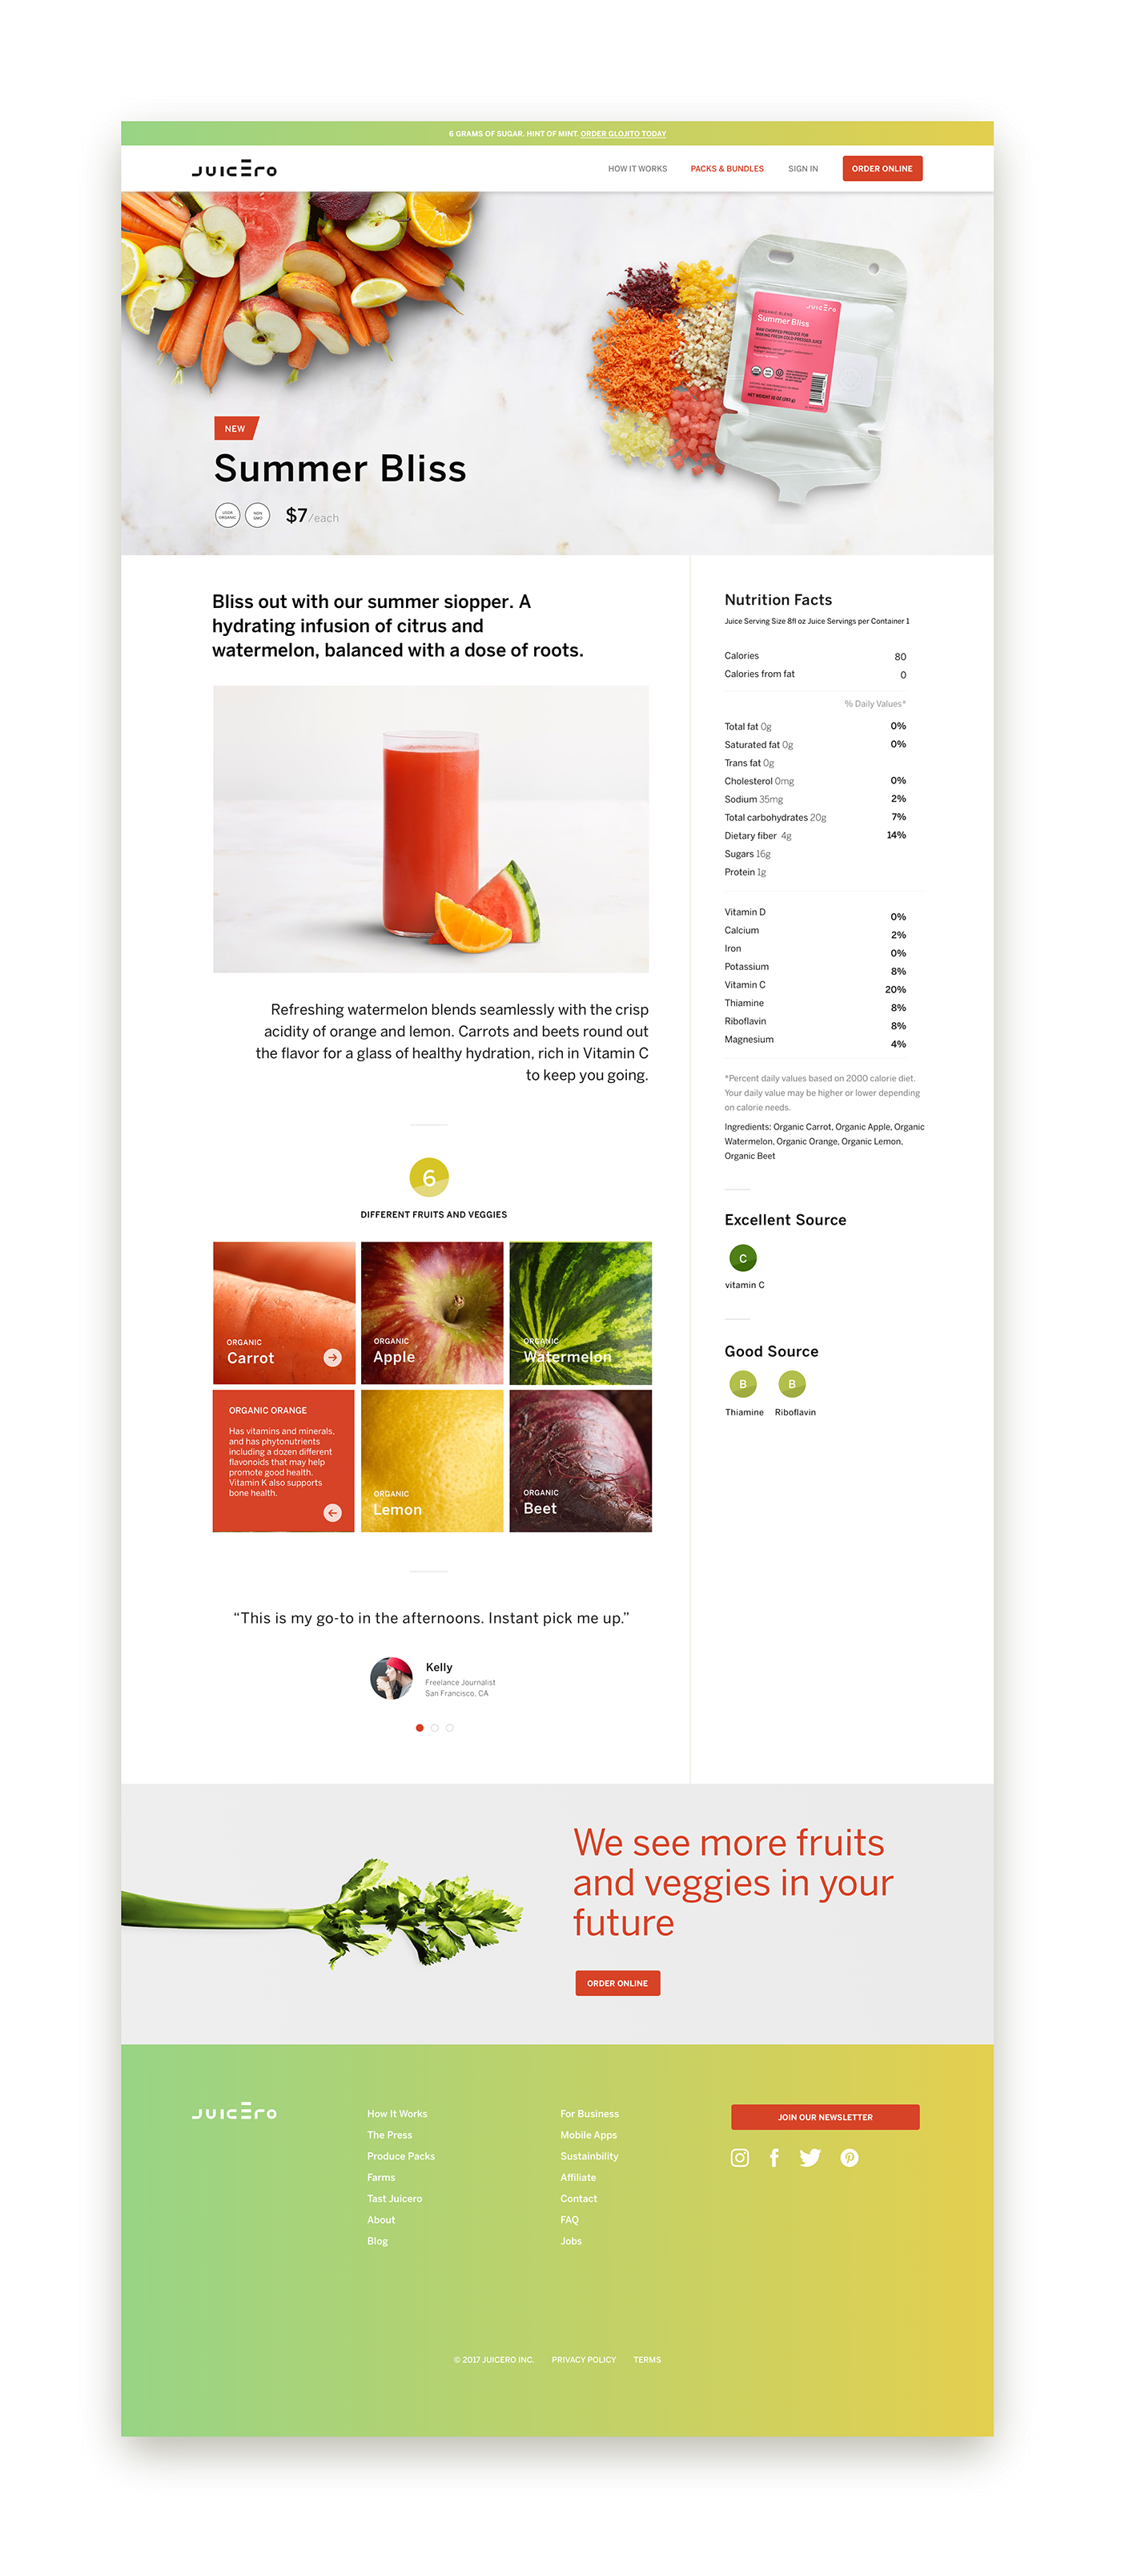 juicero juicero.com marketing page design juicero marketing juicero web Web Design 